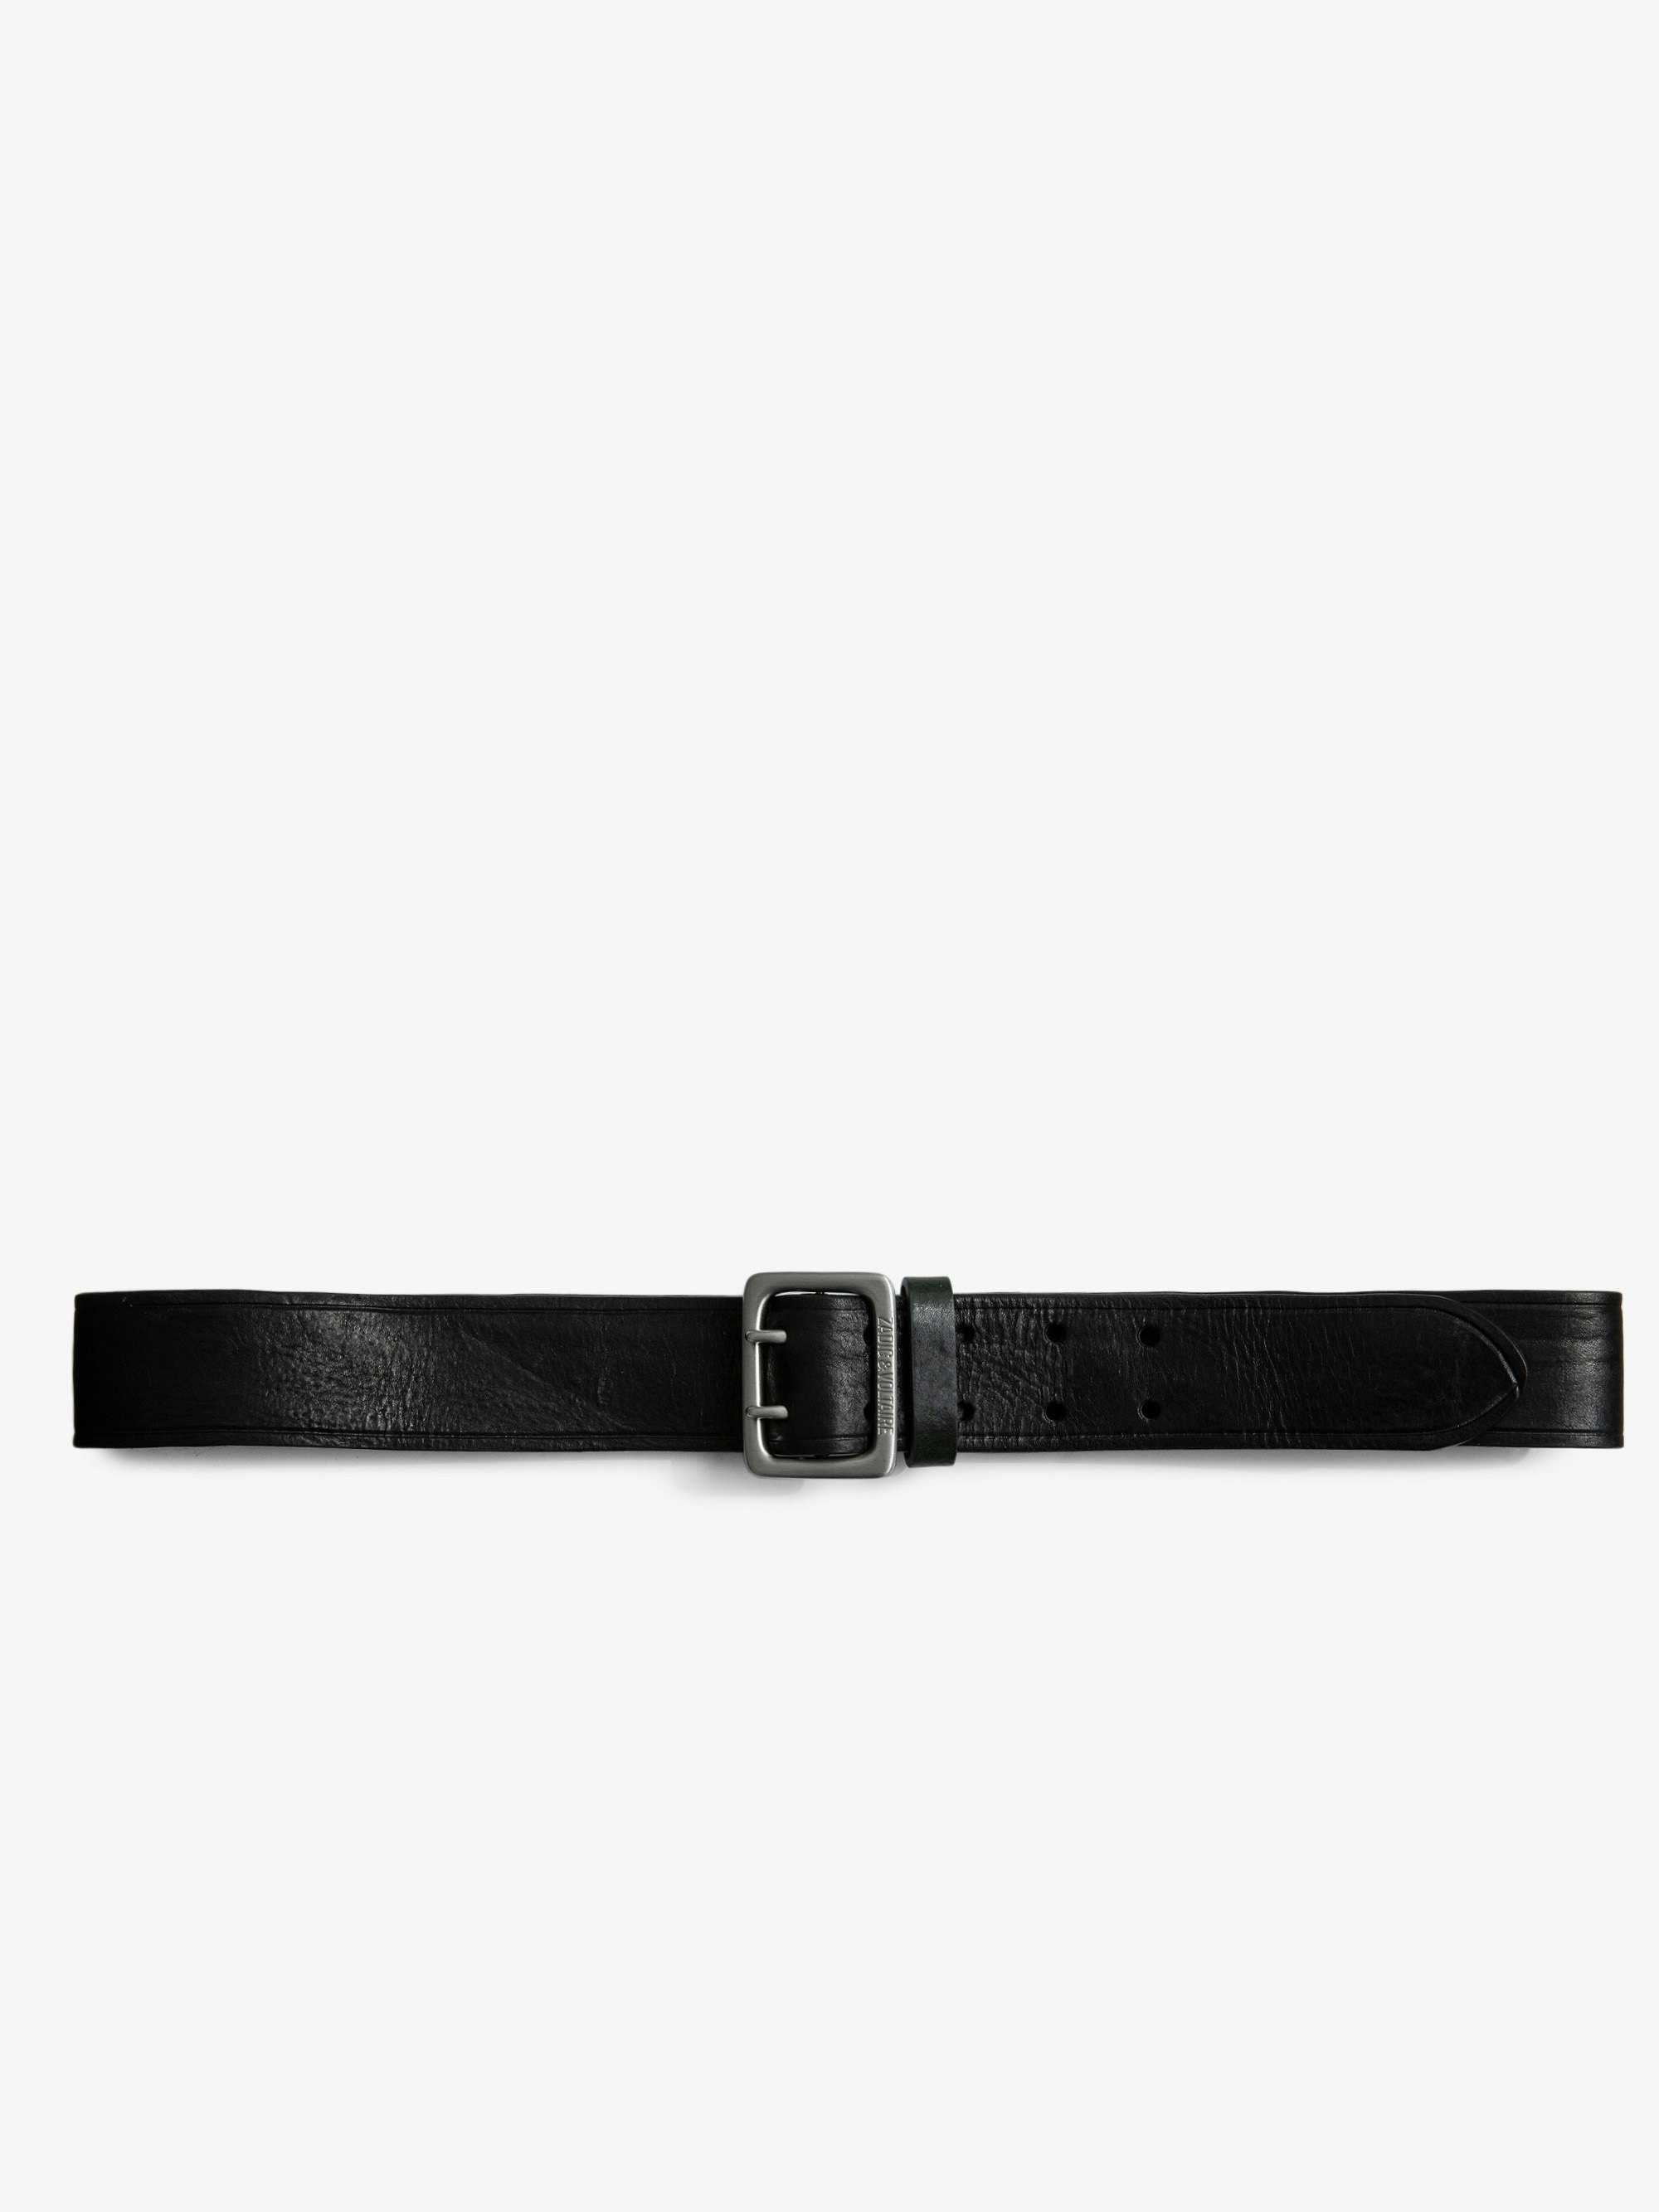 Cintura Buckley Pelle - Cintura in pelle nera con fibbia argentata uomo